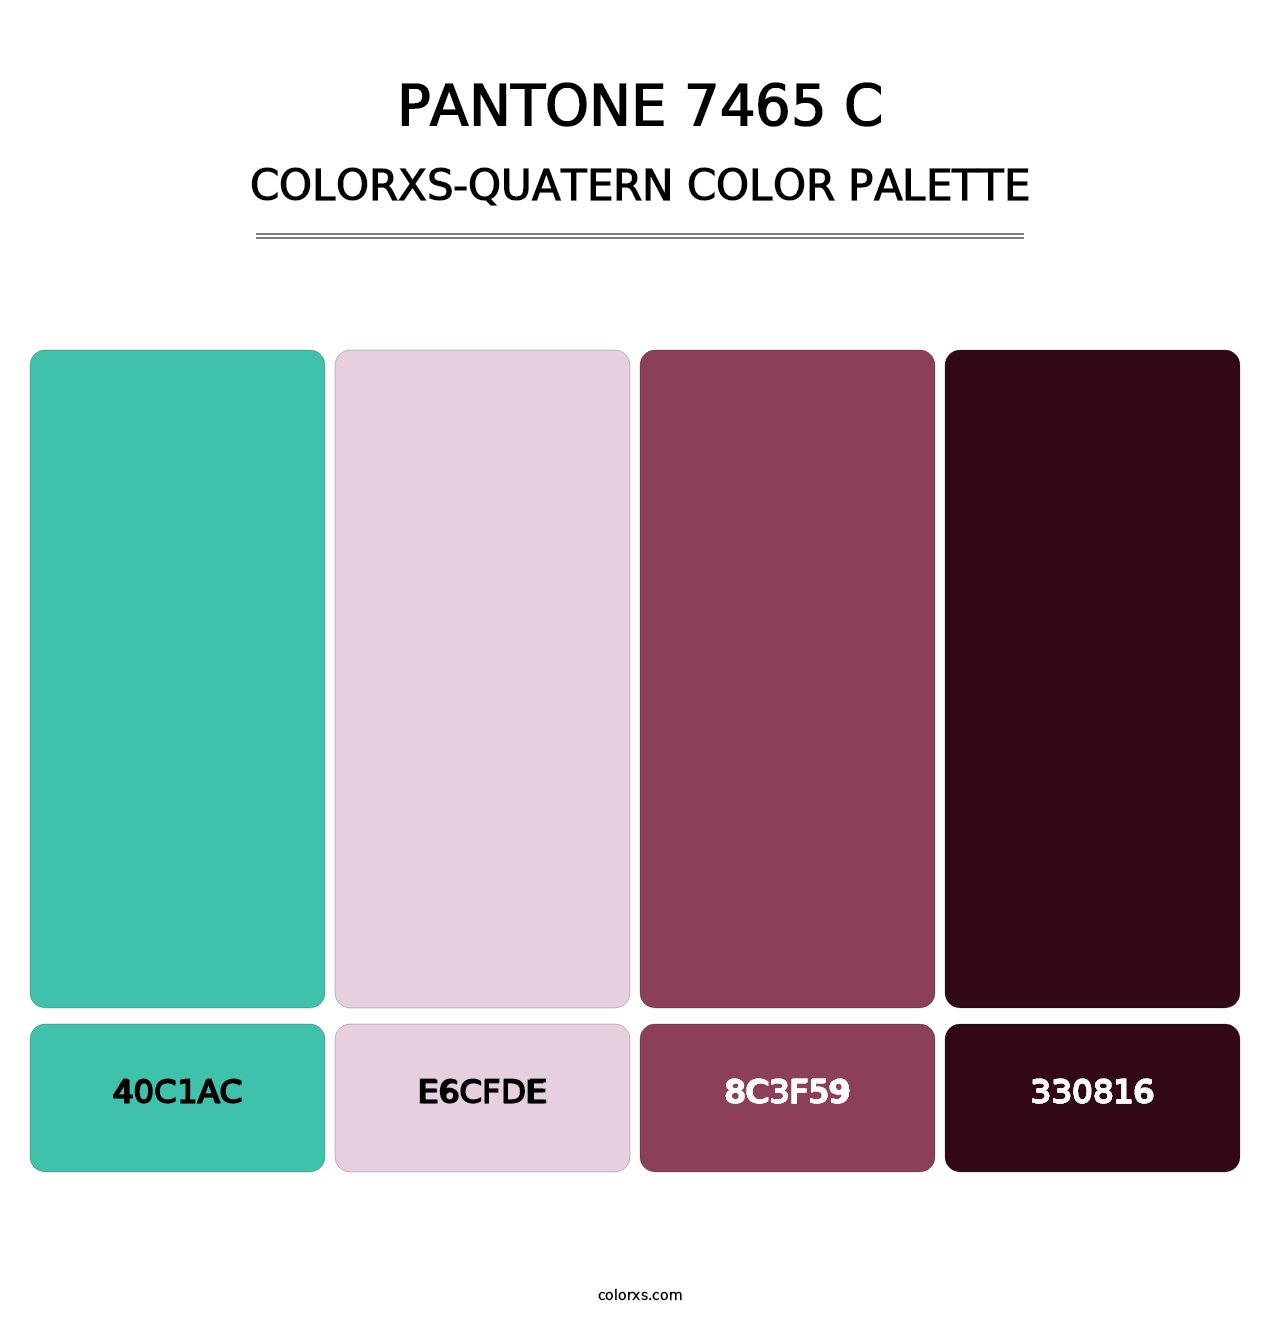 PANTONE 7465 C - Colorxs Quatern Palette